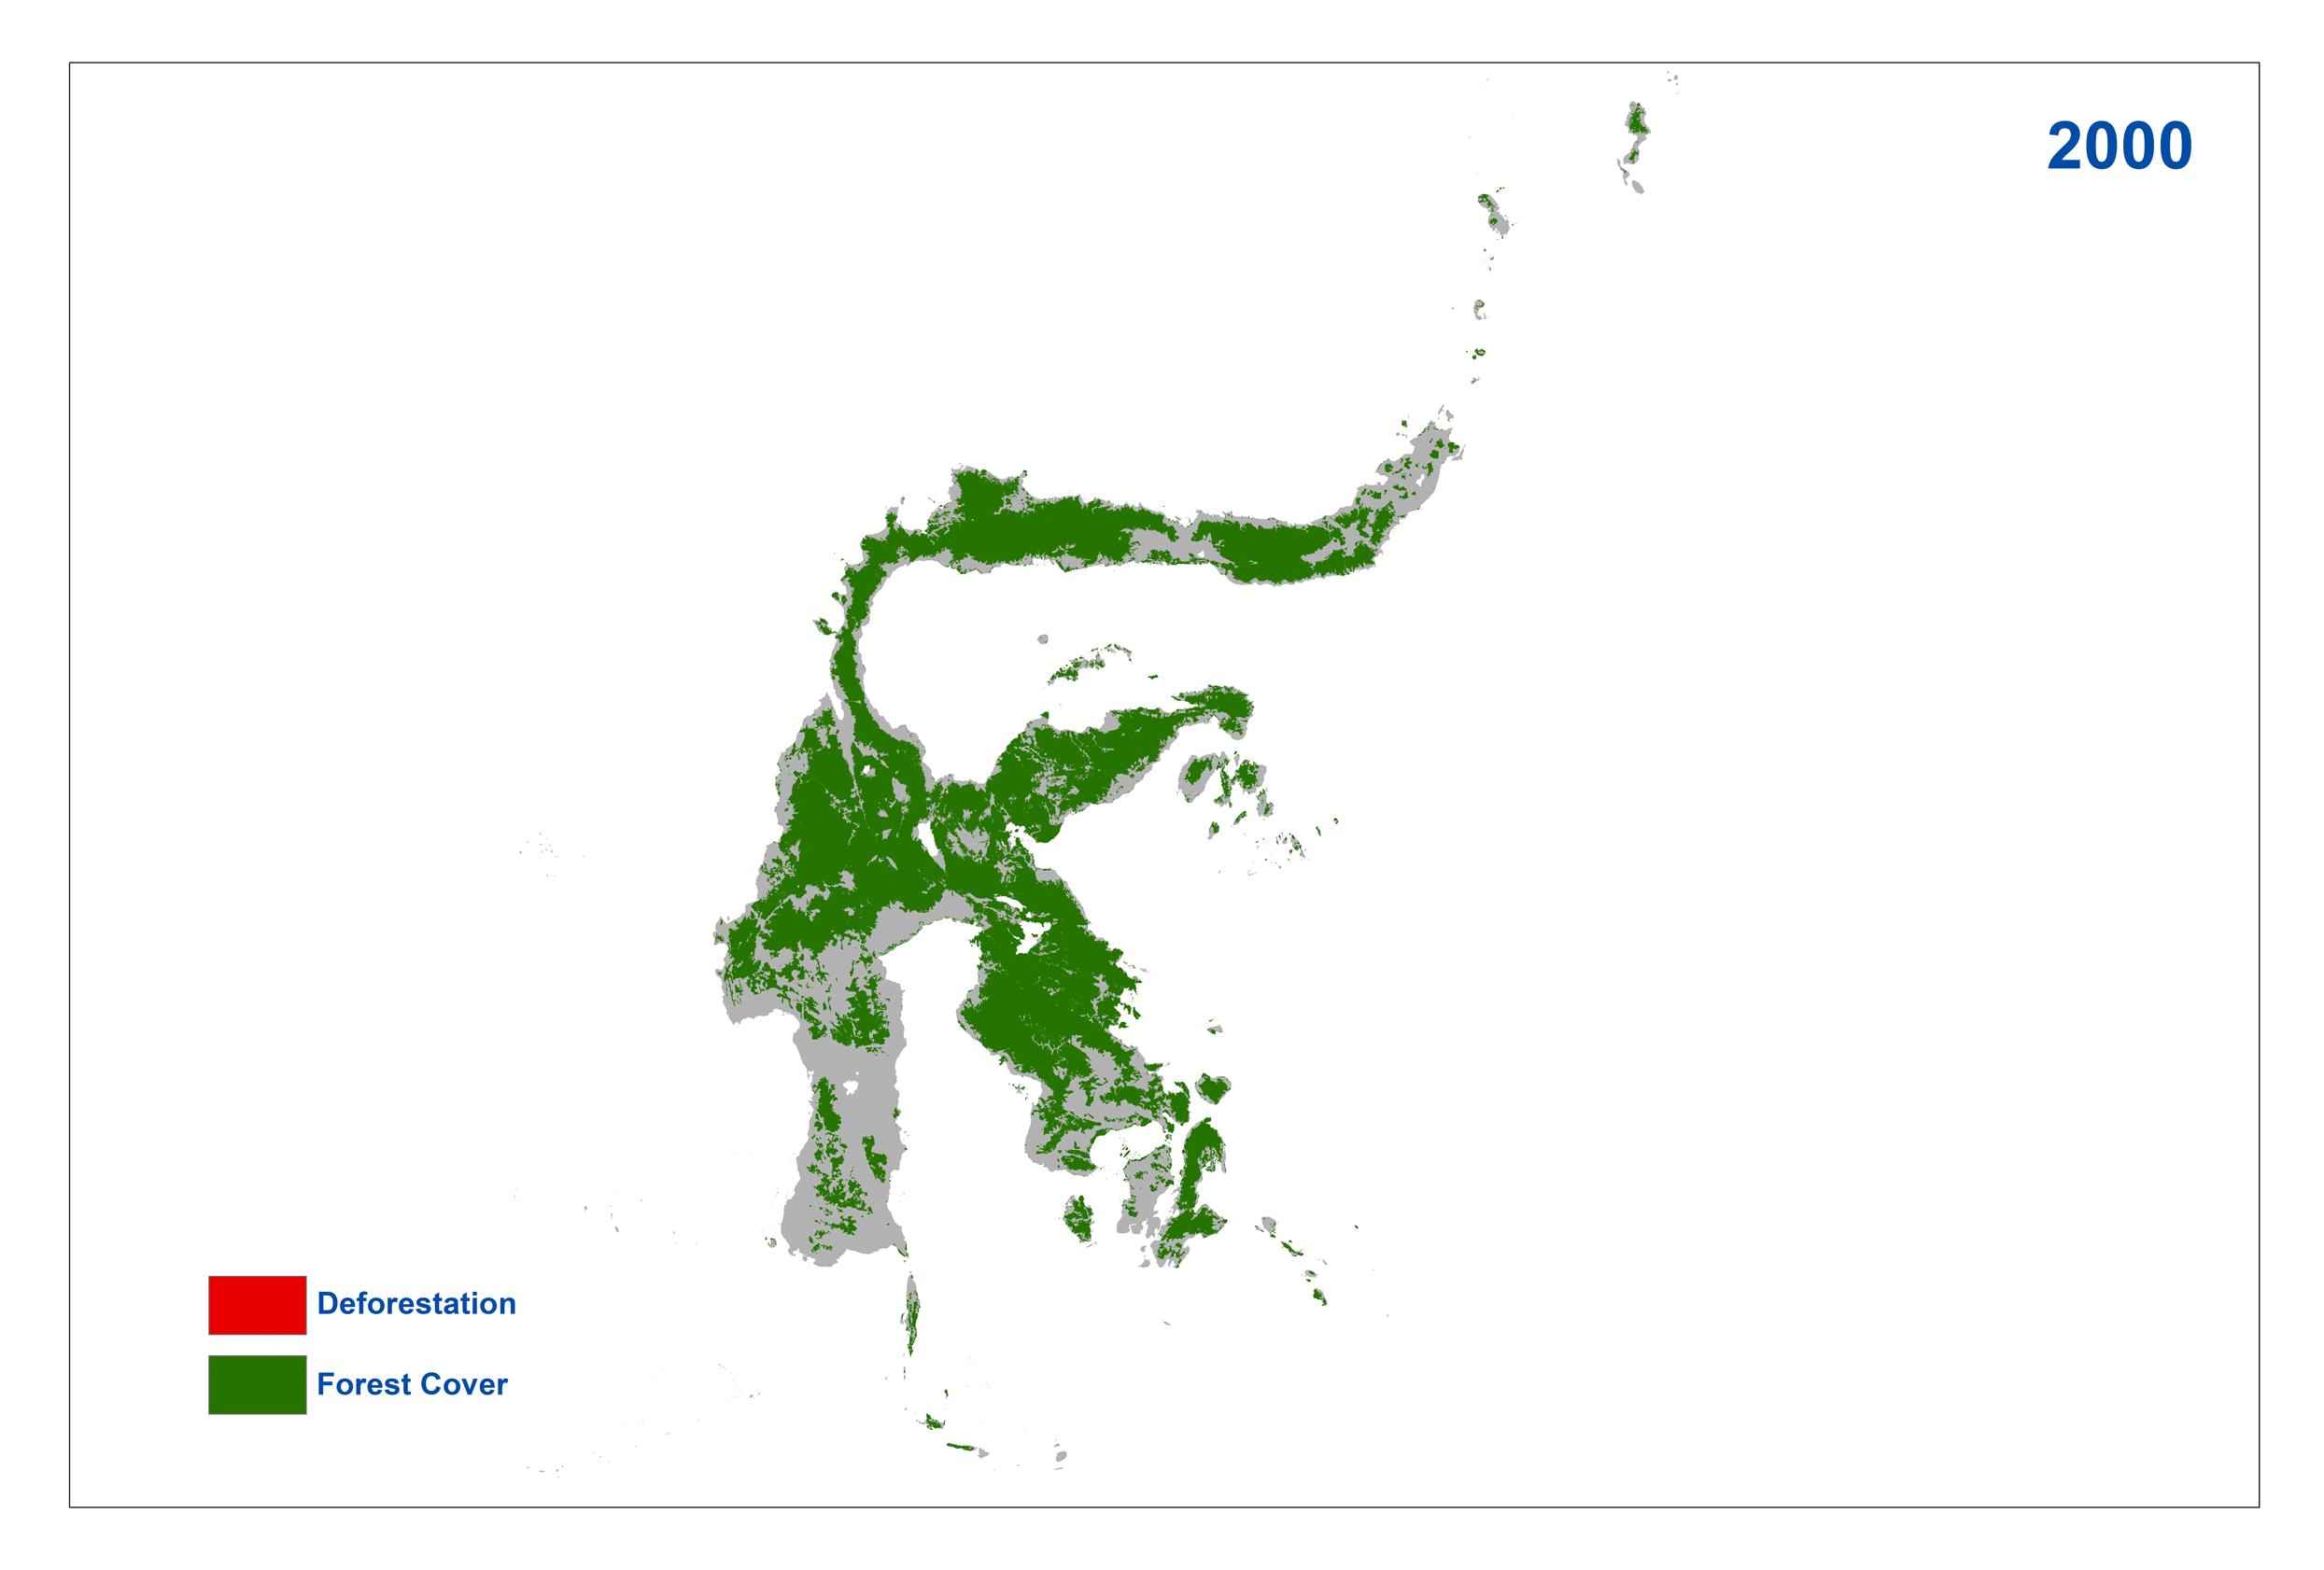 Sulawesi Deforestation